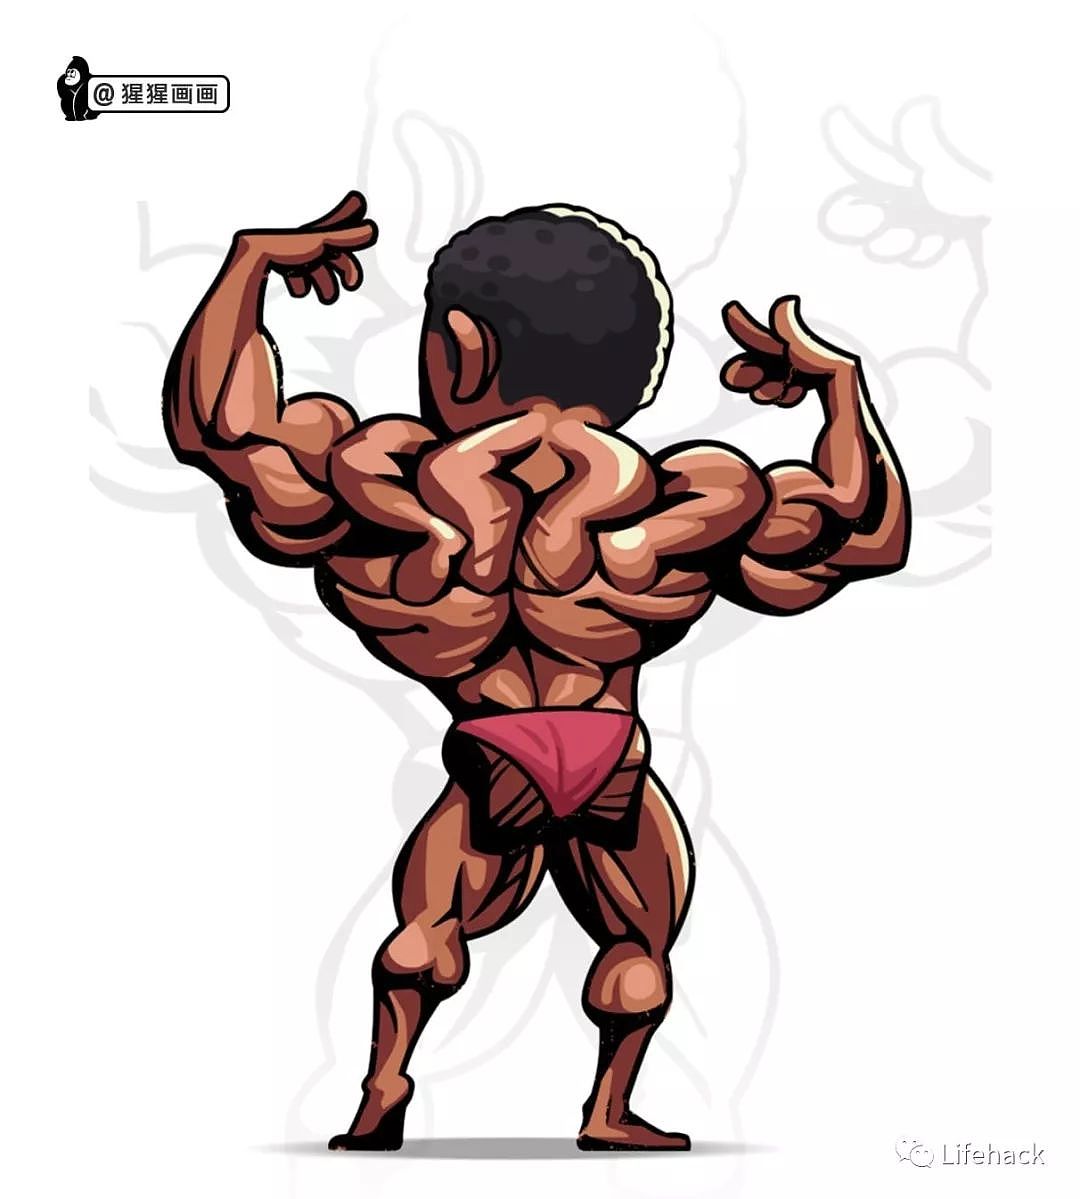 中国小伙创作的Q版肌肉漫画，把网友萌翻了 - 10